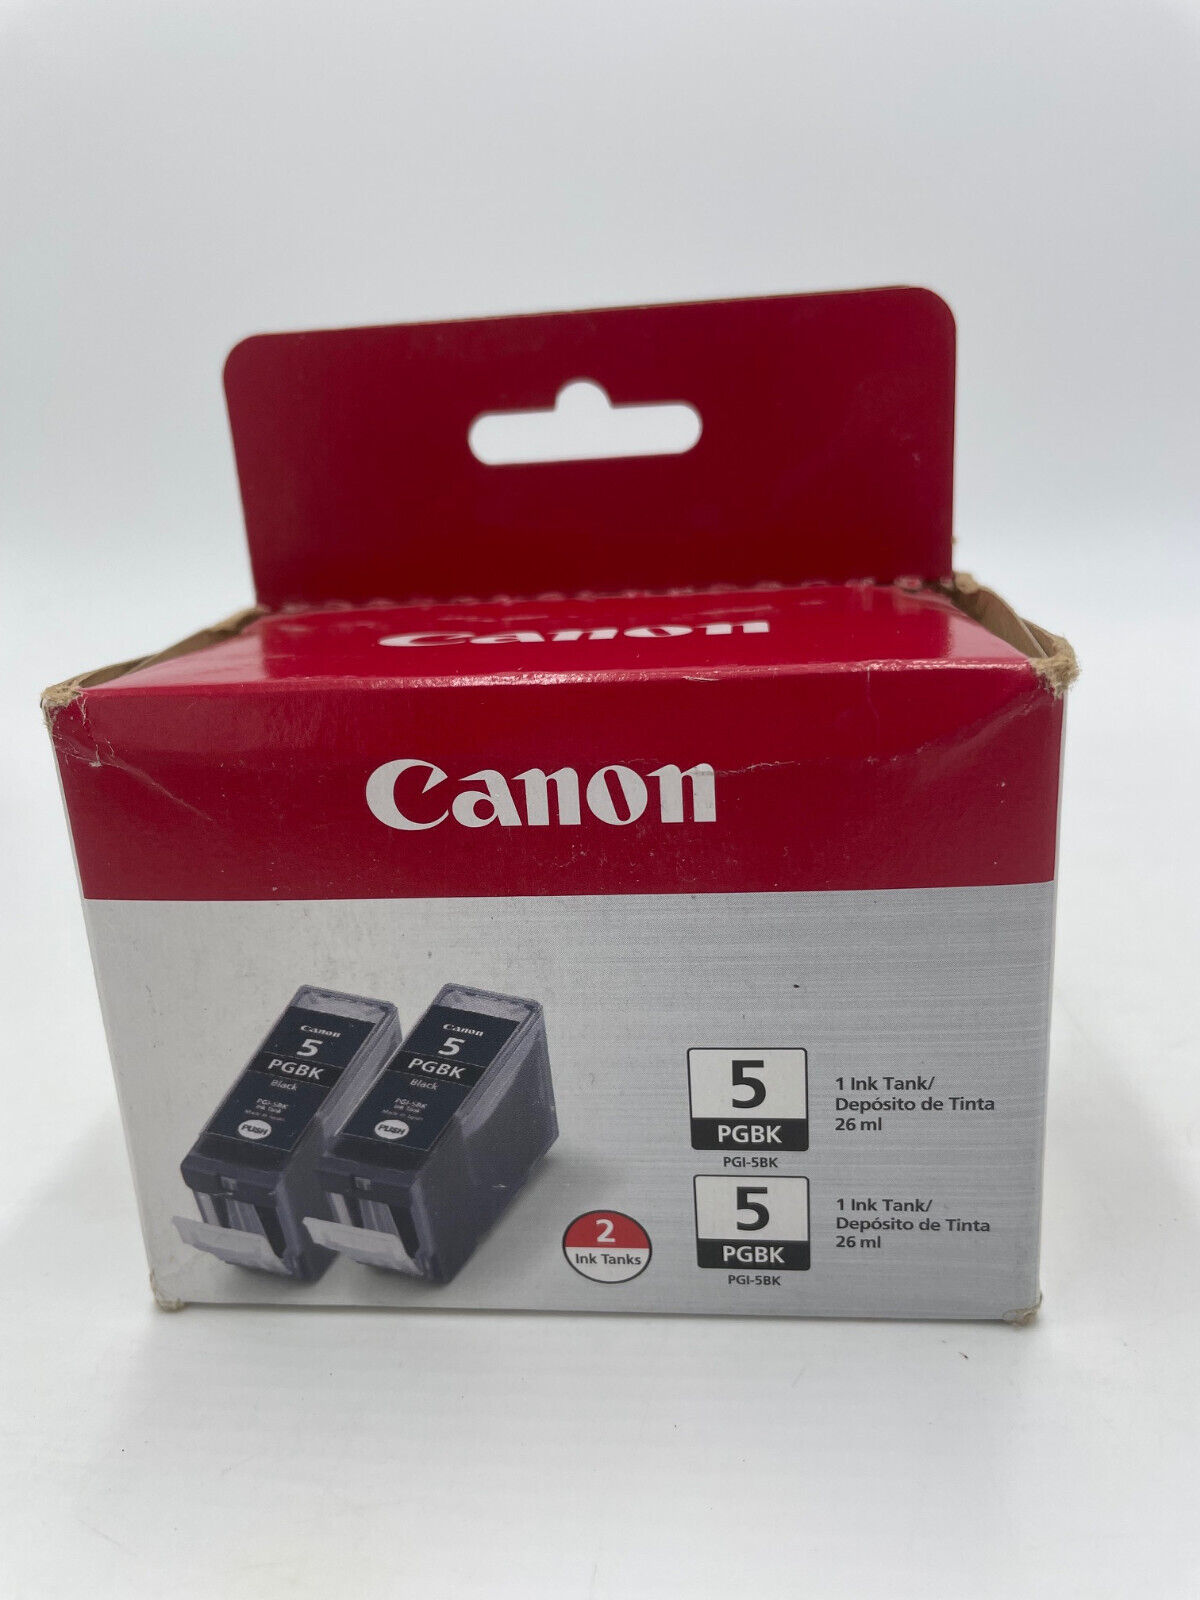 Canon PGI-5BK PG BK Black Ink Cartridge 2-Pack New & Sealed 2013